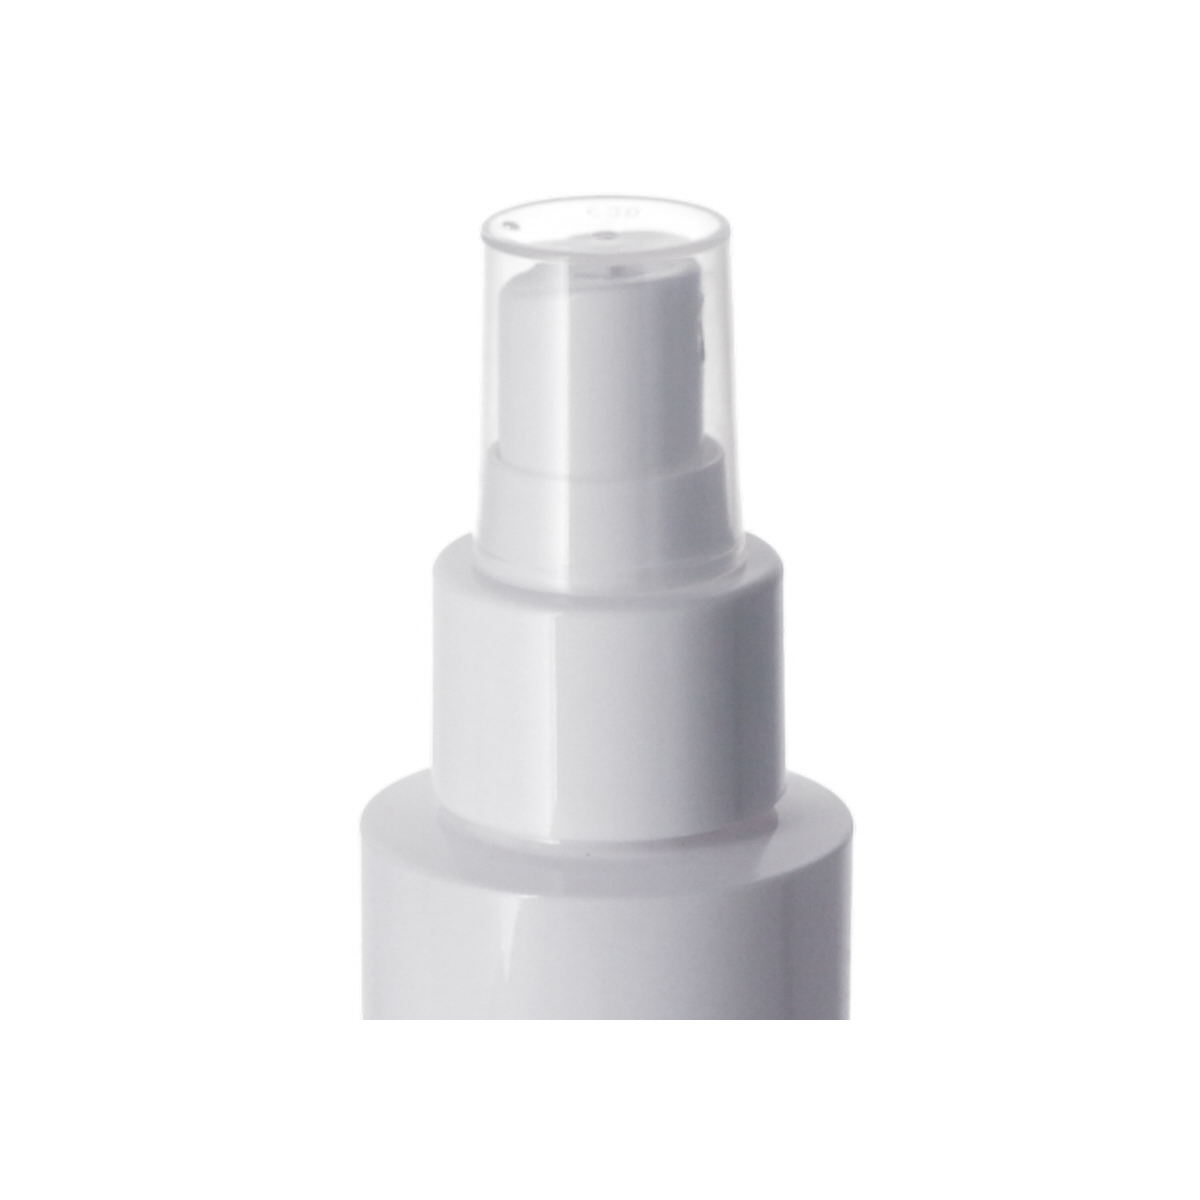 Sprayer Pumps,<0.2cc,Sprayer Pumps,Facial toner,Hair toner,ordinary mist